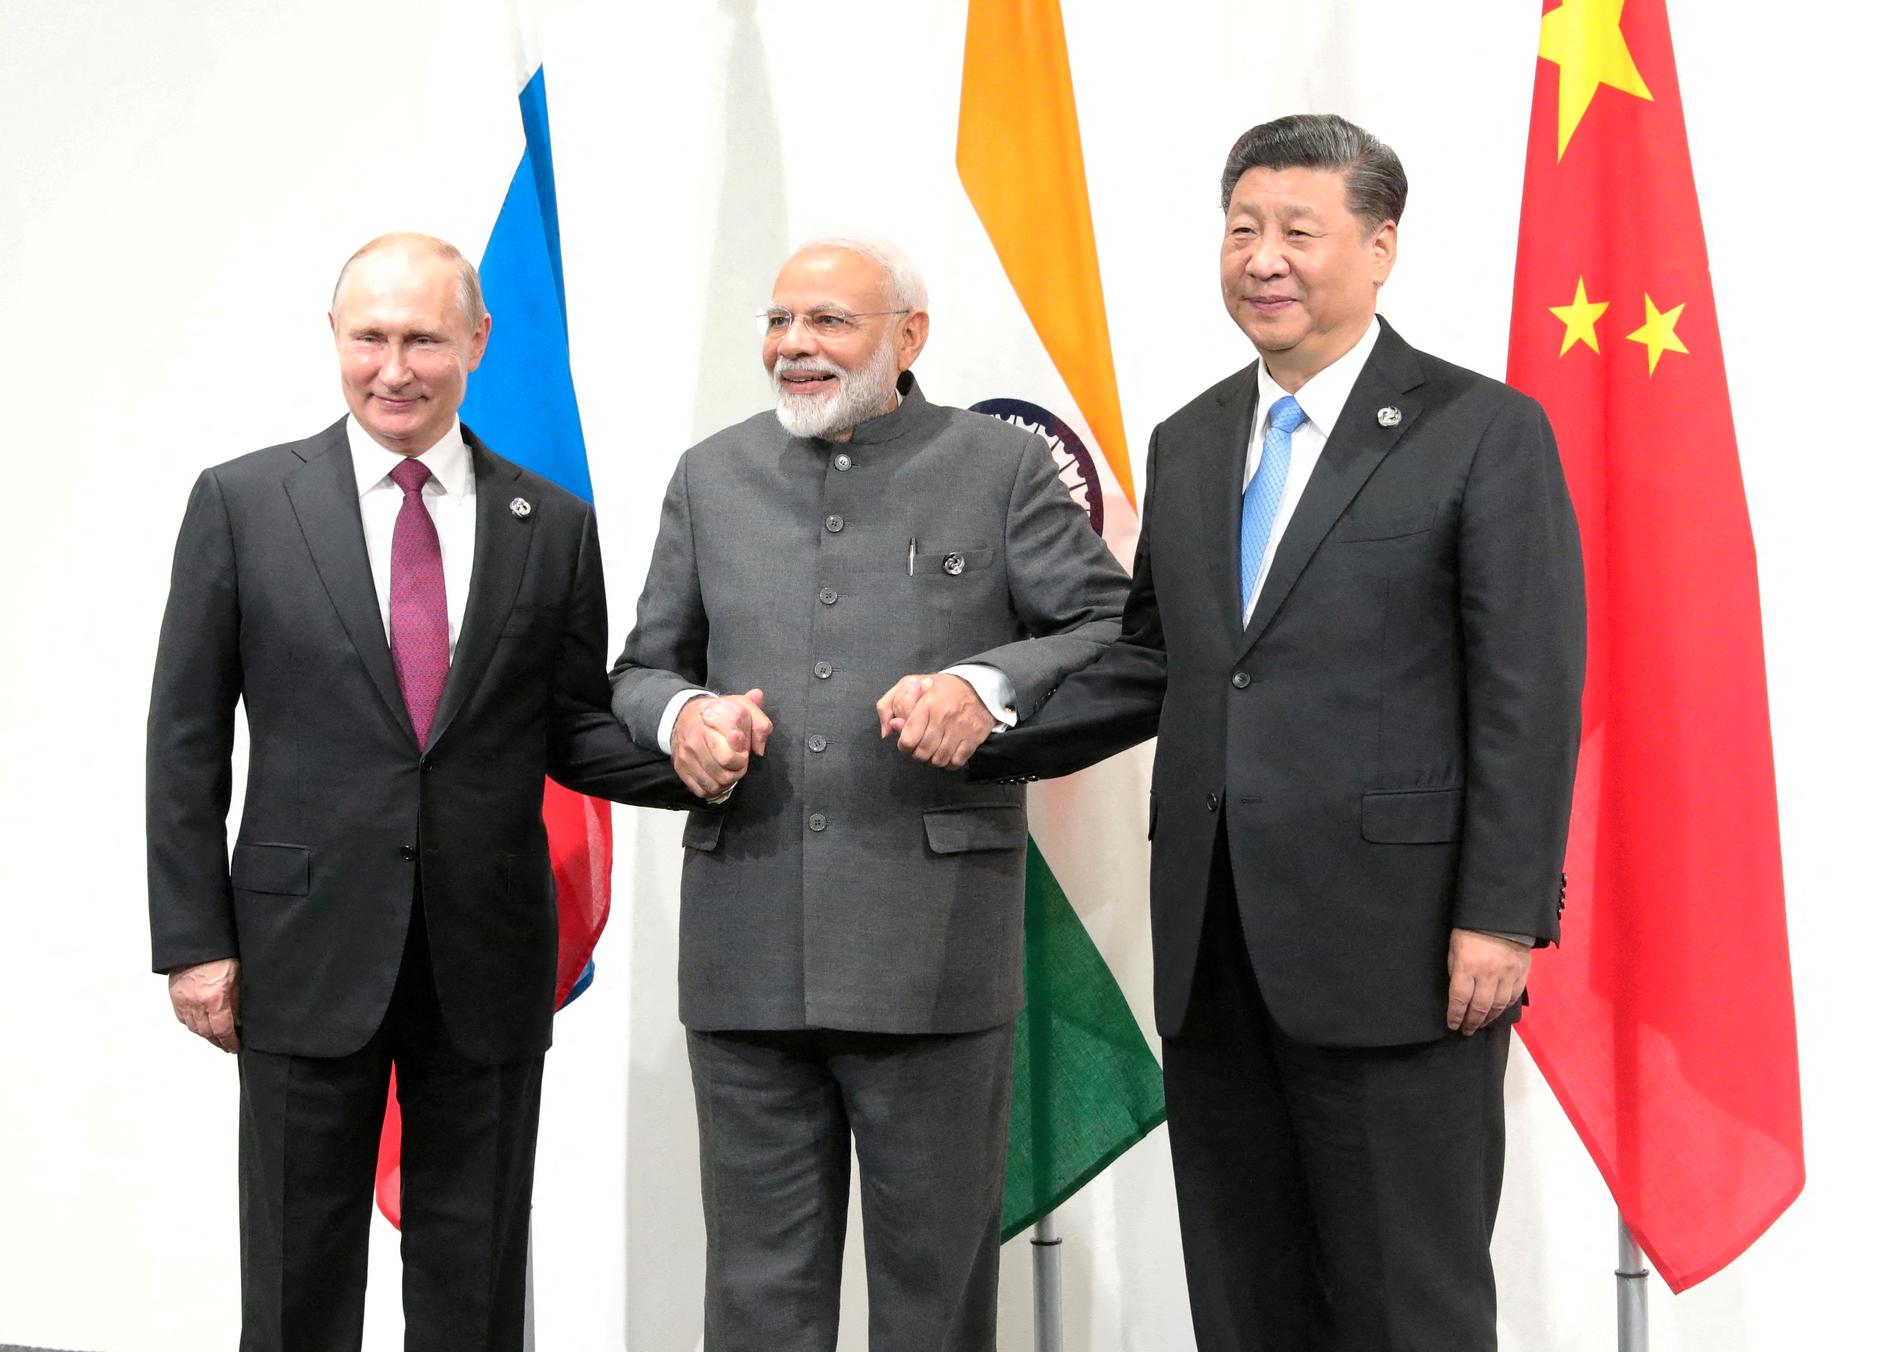 Il trio a Osaka: Vladimir Putin, Narendra Modi e Xi Jinping posano per i fotografi all'incontro del G20 a Osaka nel 2019.